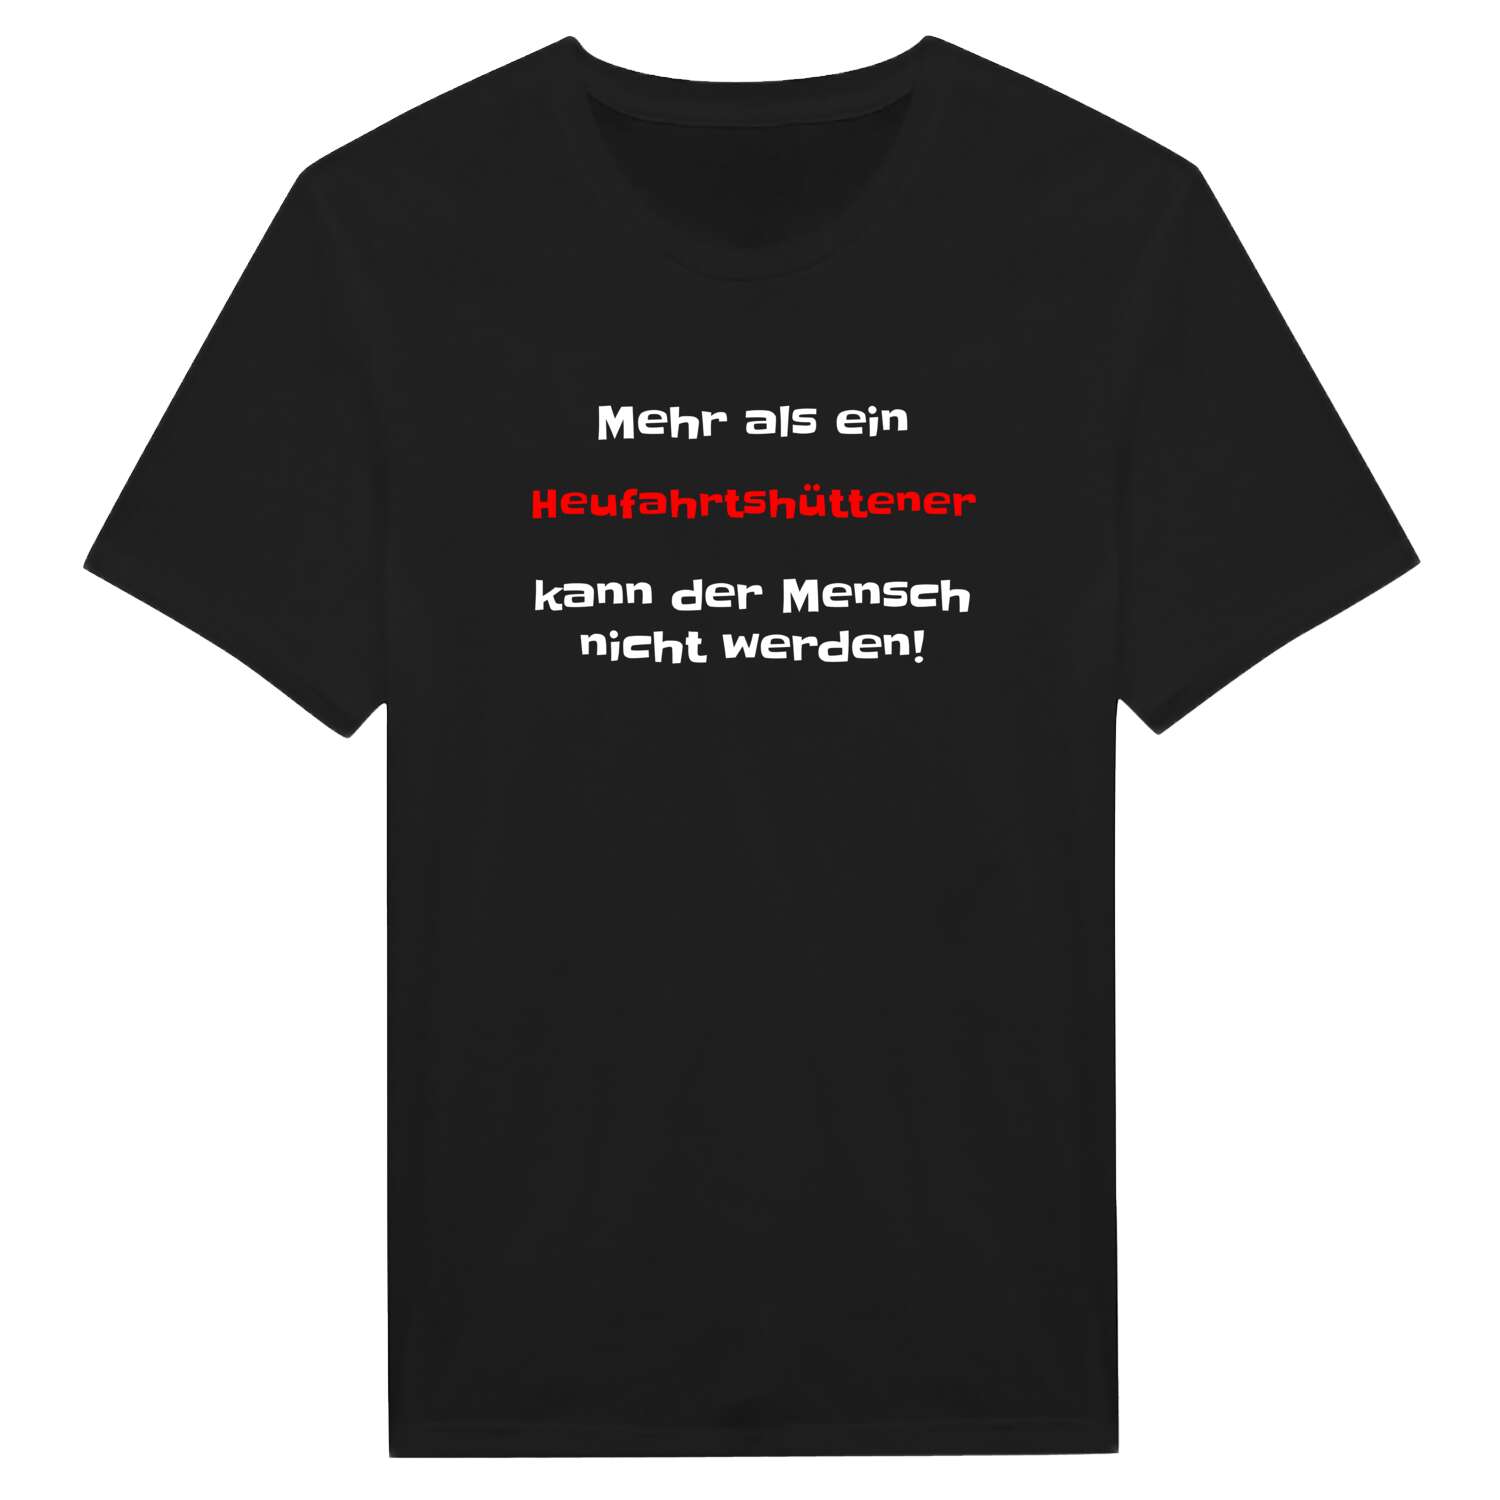 Heufahrtshütte T-Shirt »Mehr als ein«